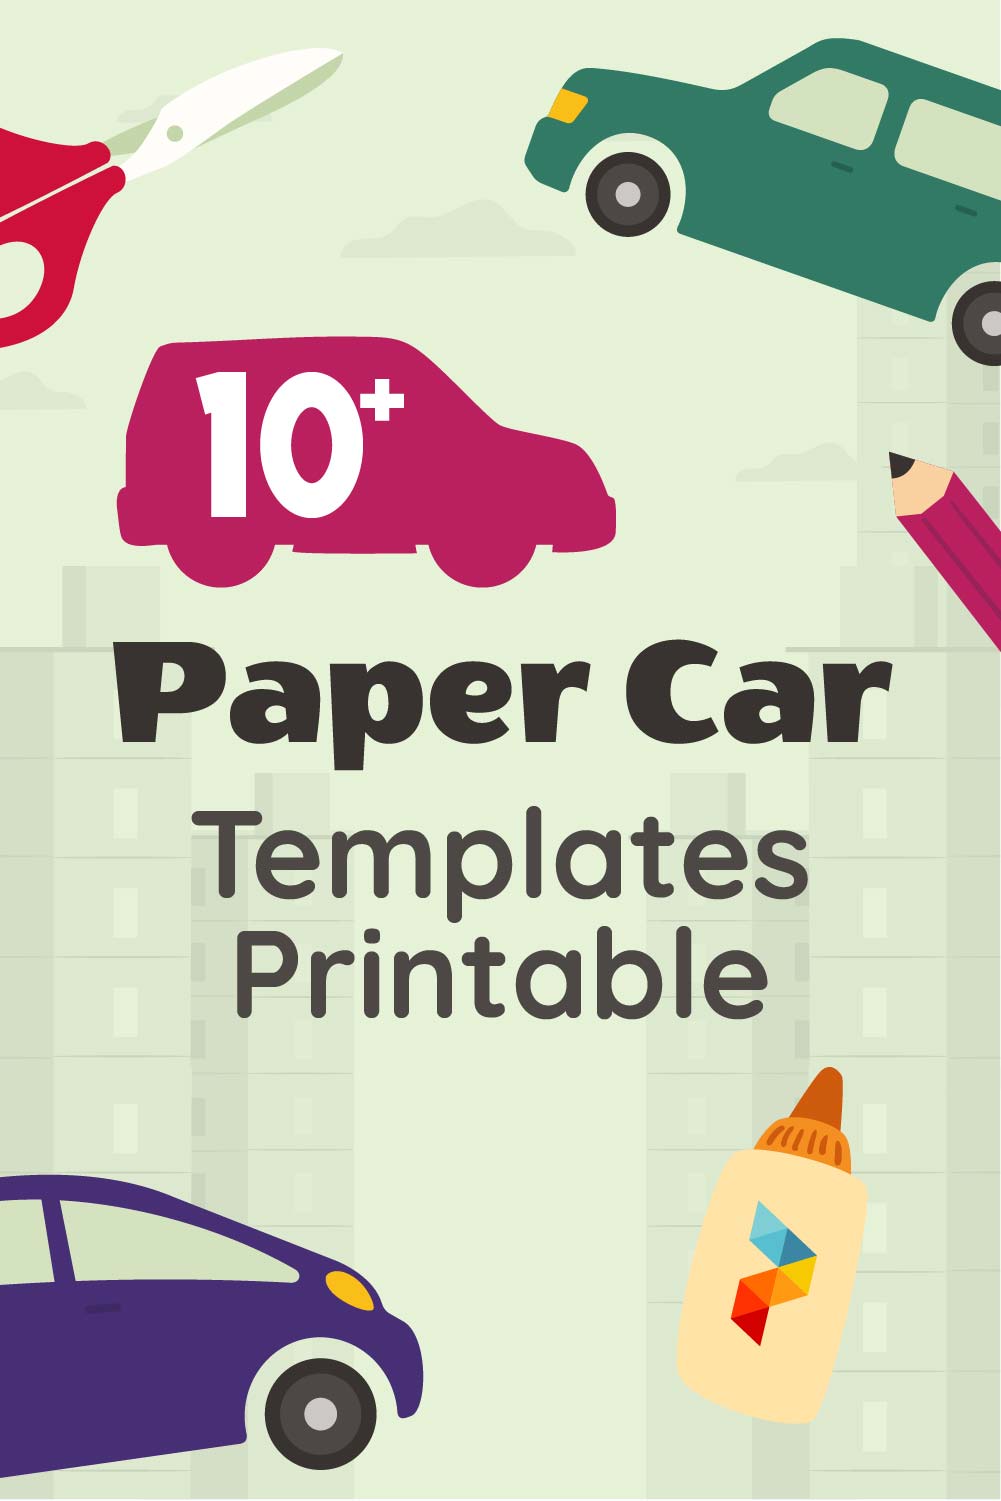 Paper Car Templates